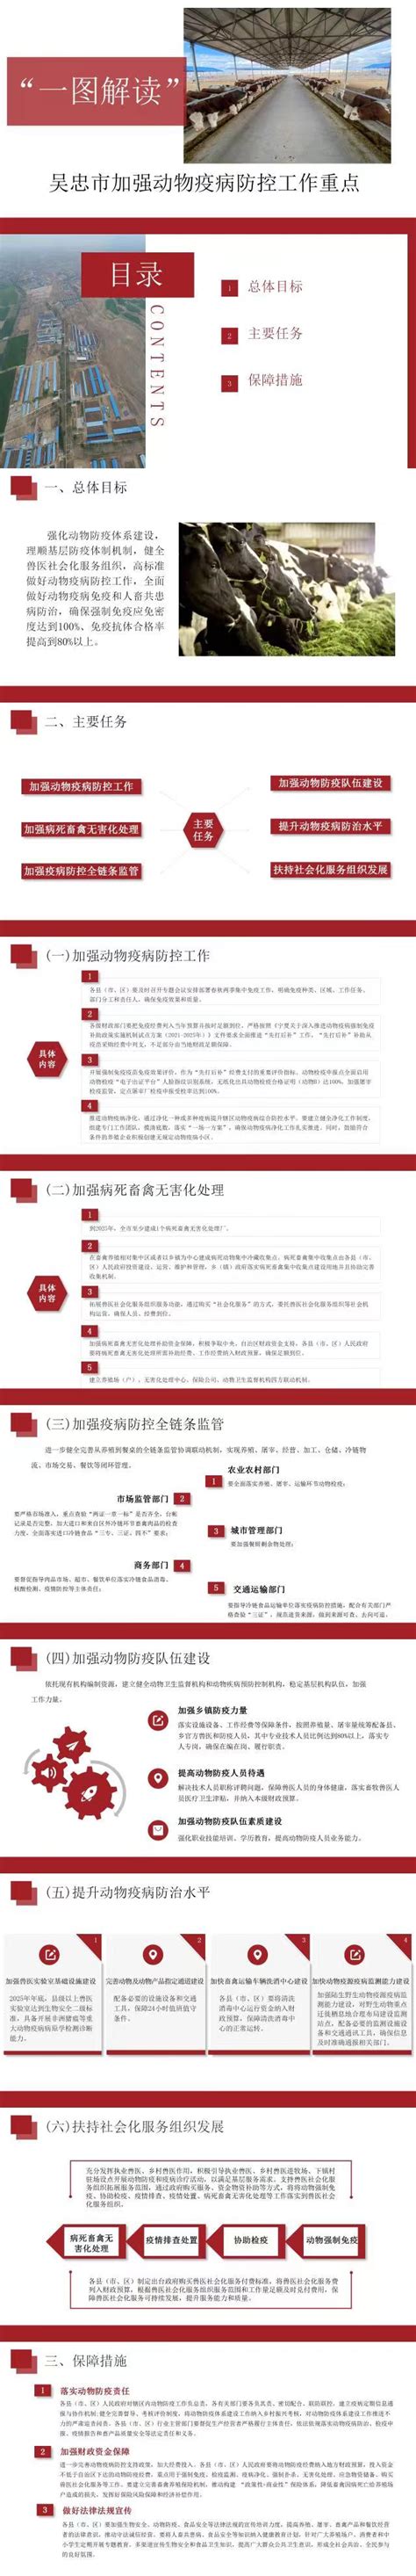 宁夏吴忠市博物馆 - 宏瑞文博集团股份有限公司官网